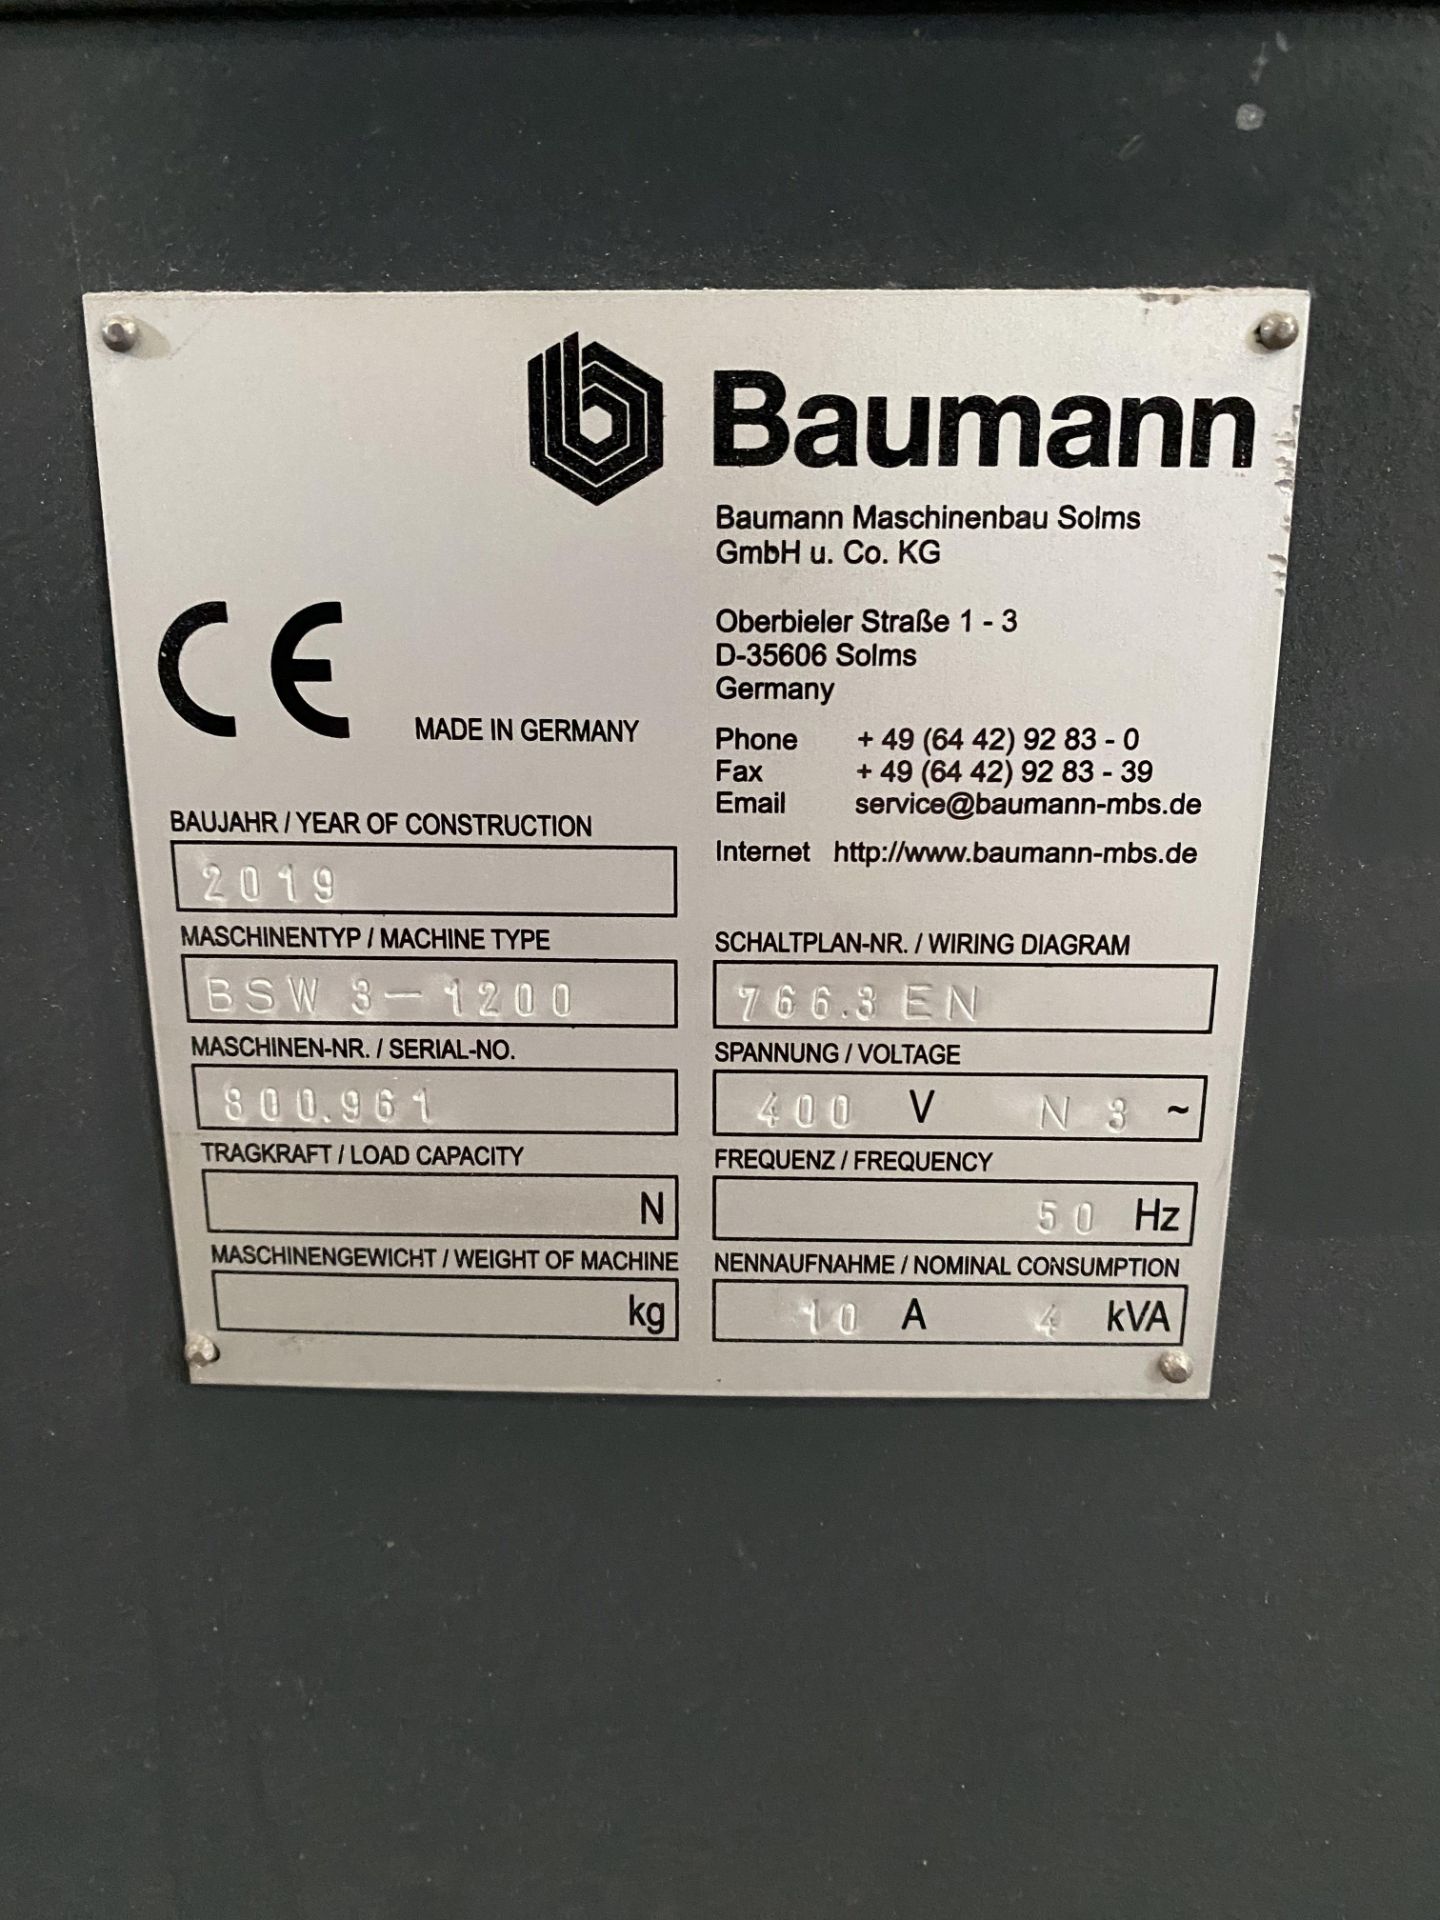 Baumann pile turner, model BSW-3-1200, serial no. 800i961 (2019) - Image 3 of 8